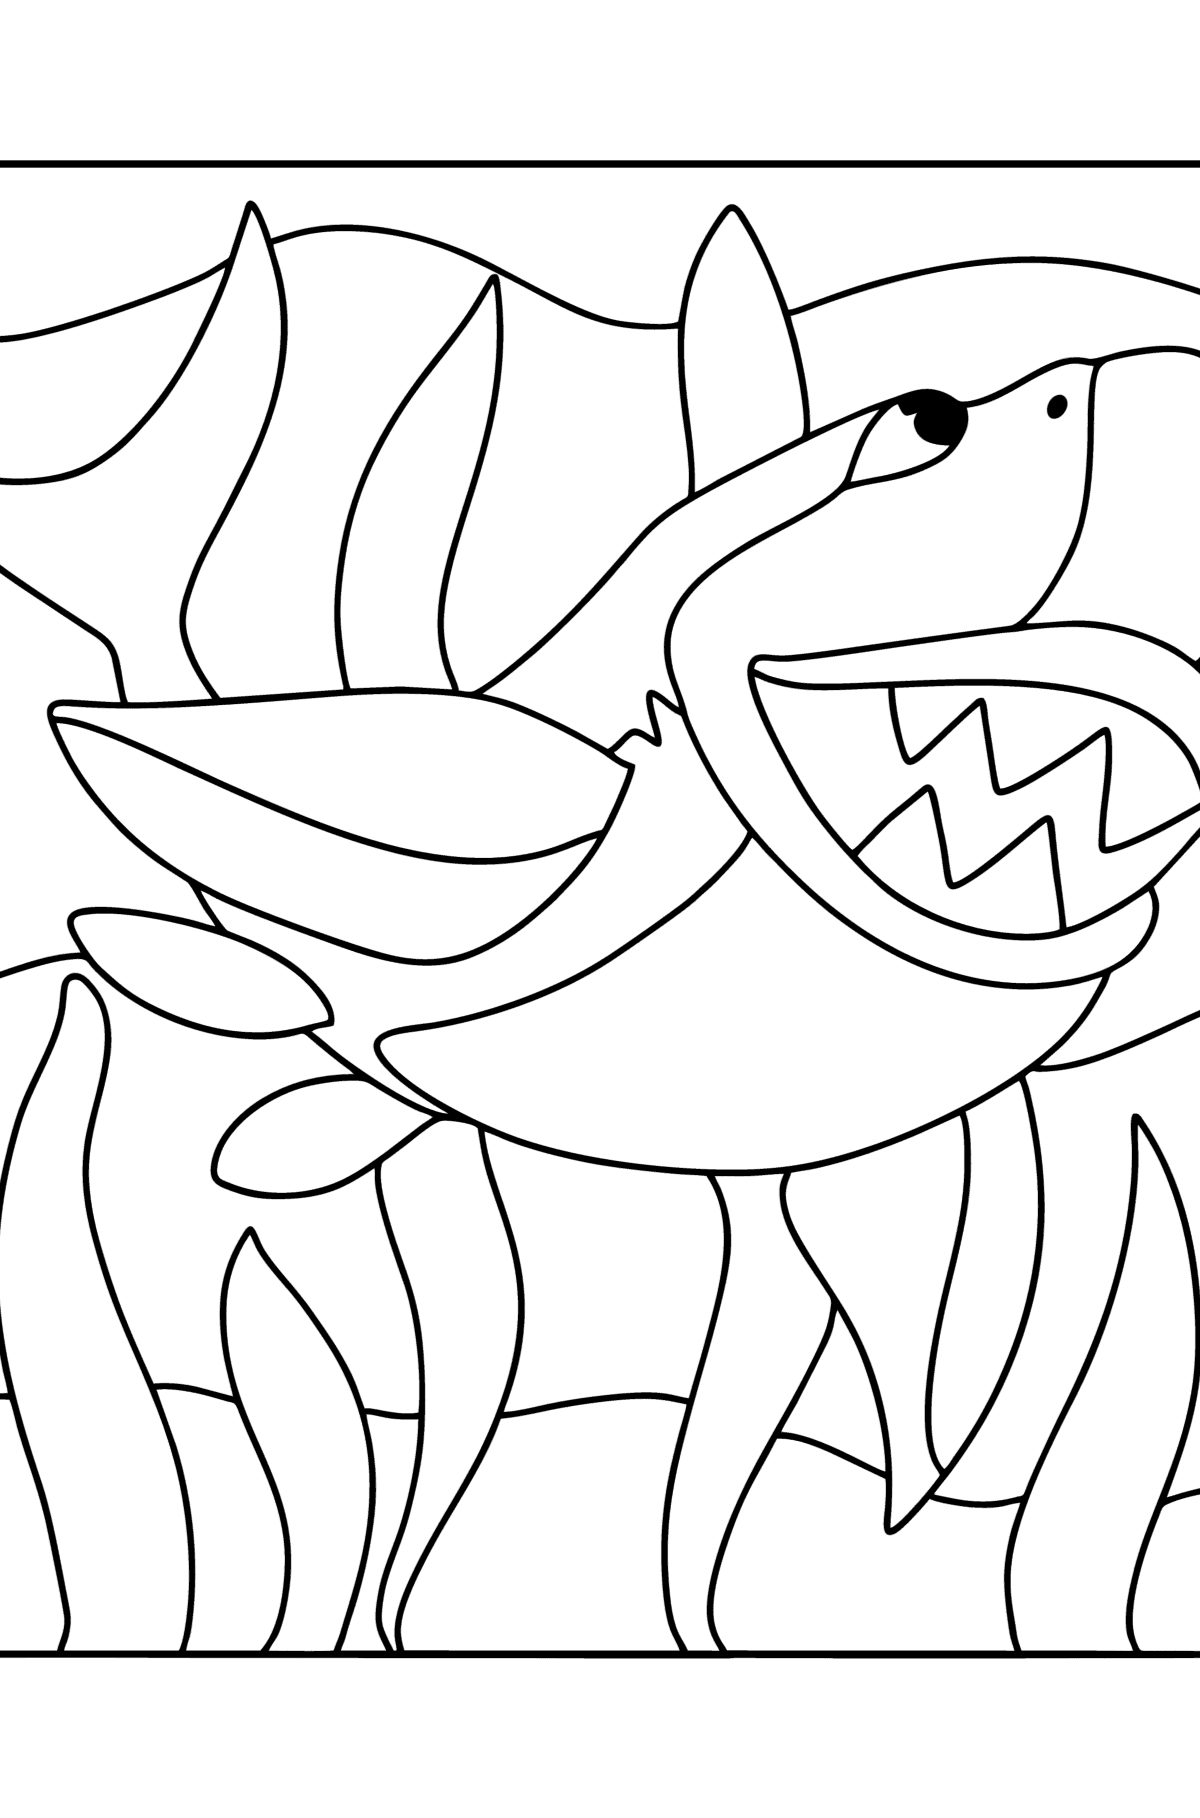 Boyama sayfası köpek balığı - Boyamalar çocuklar için